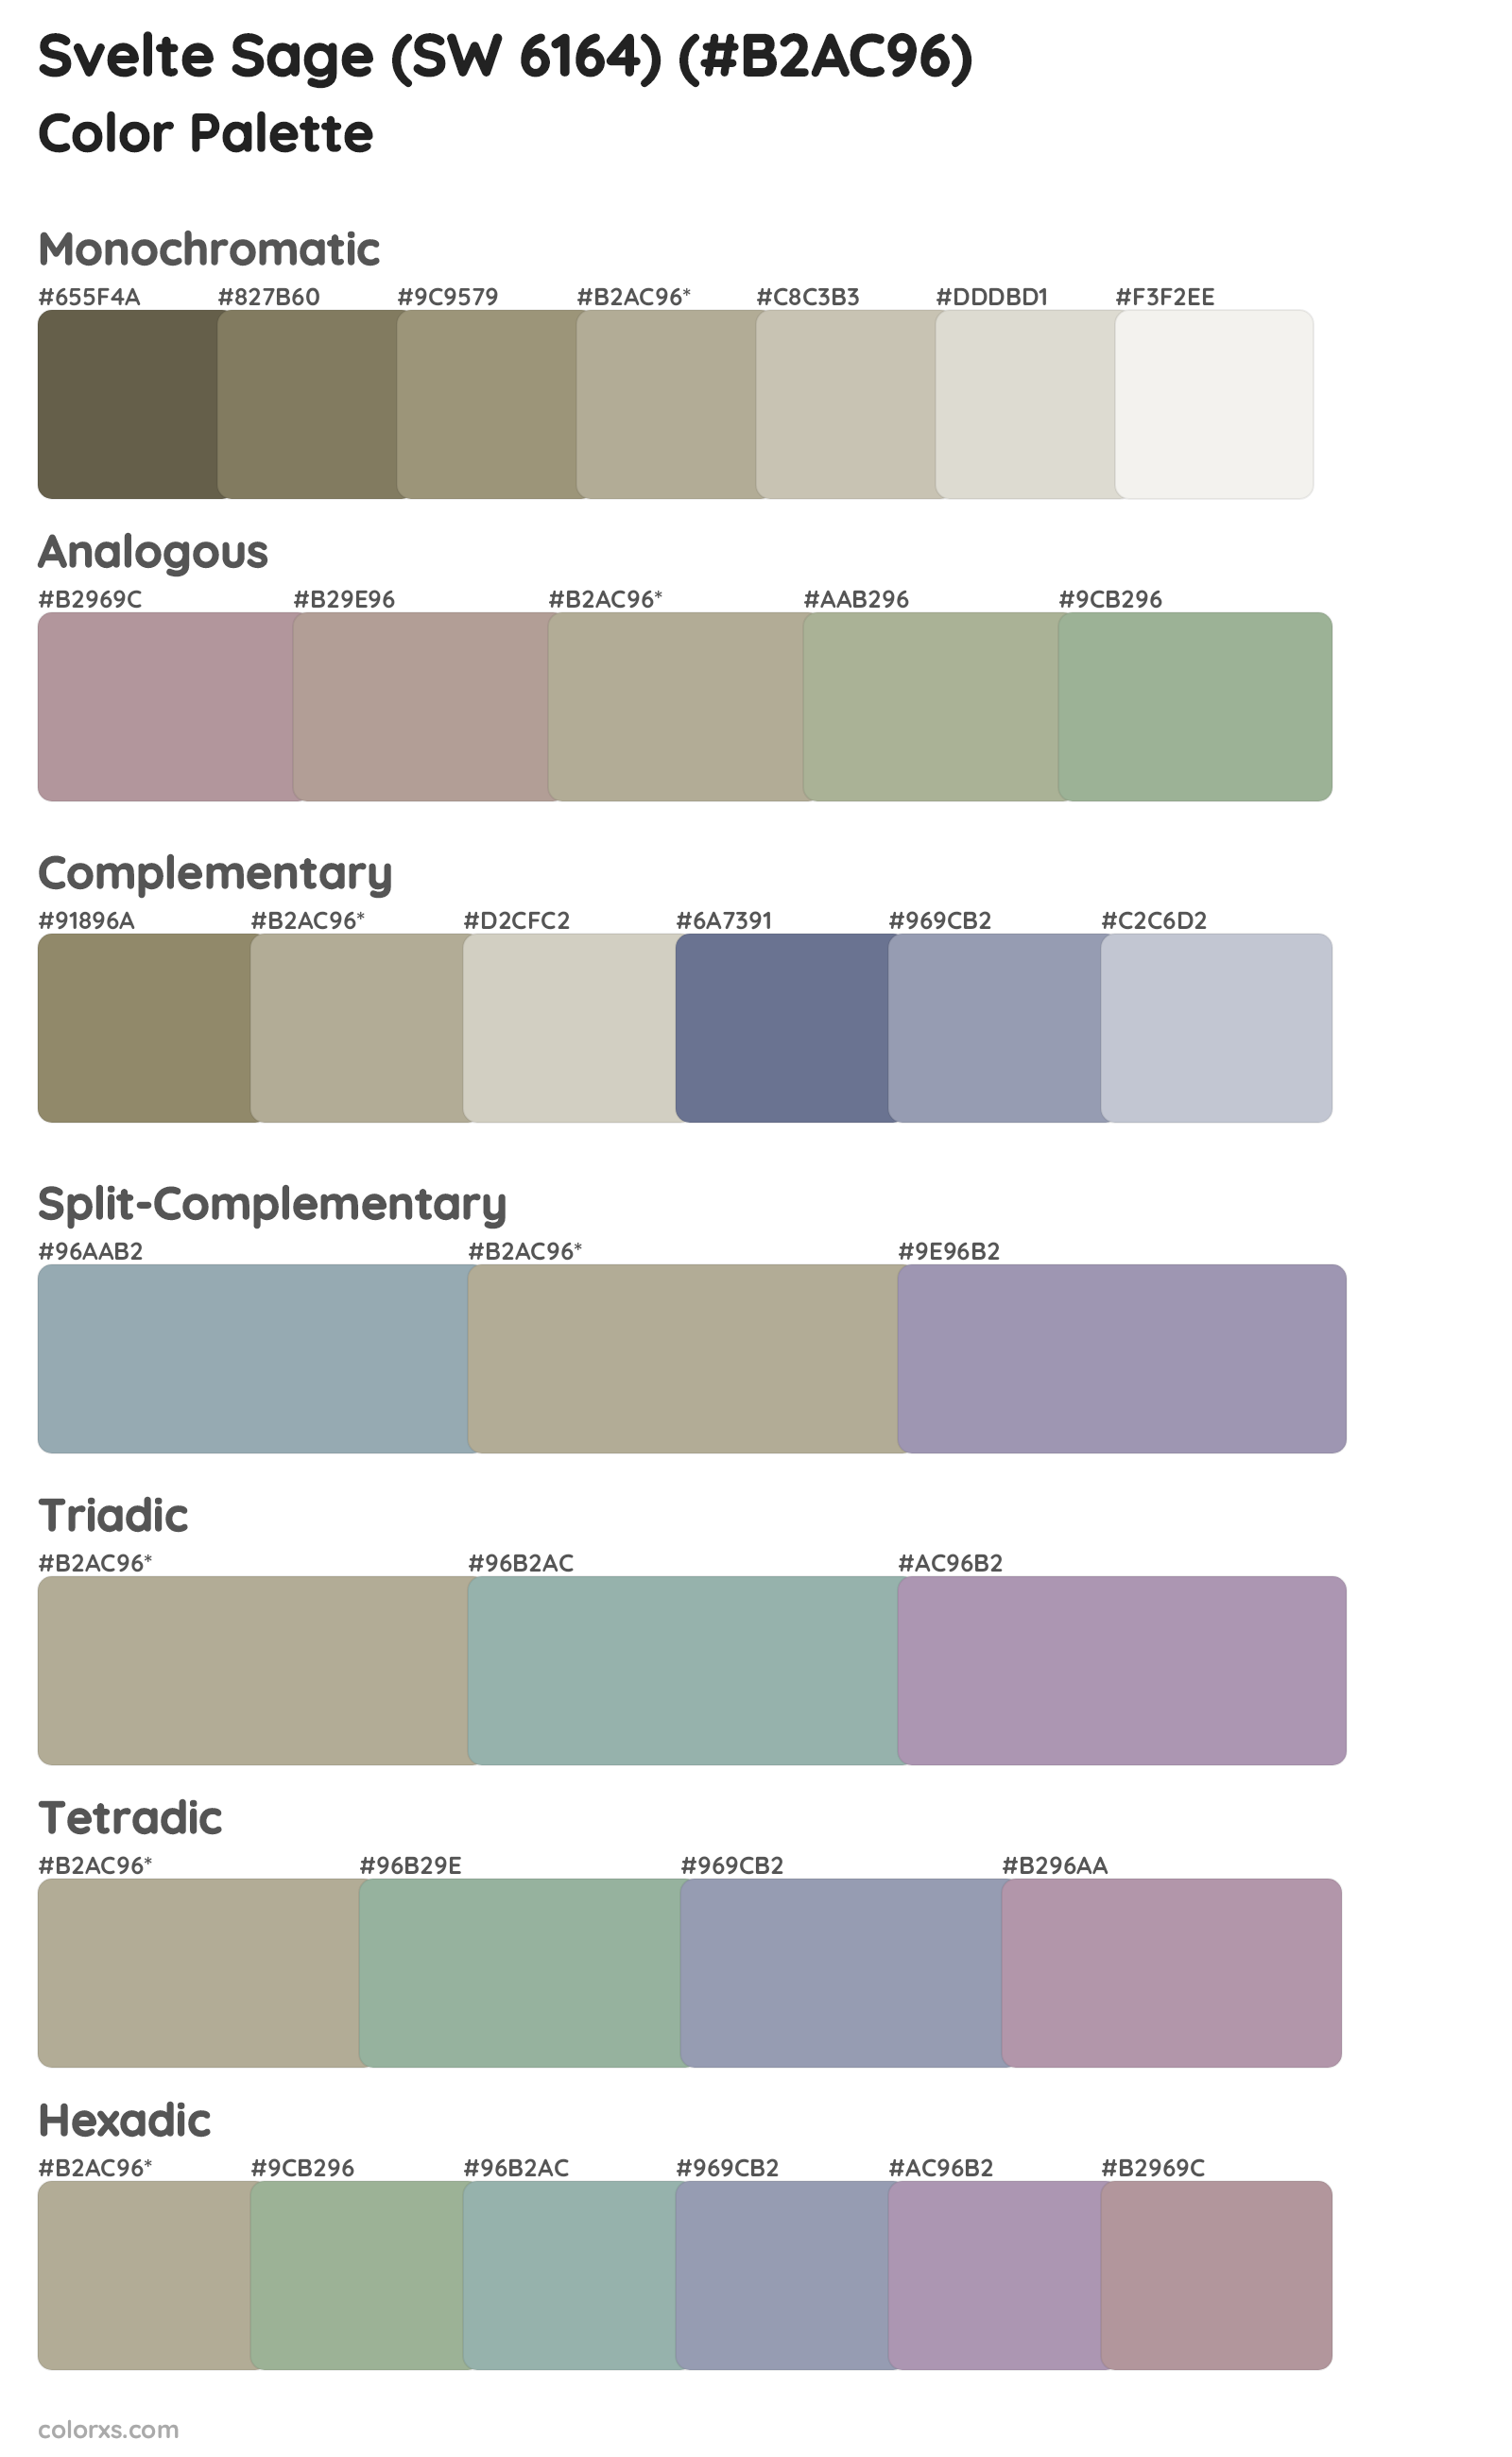 Svelte Sage (SW 6164) Color Scheme Palettes